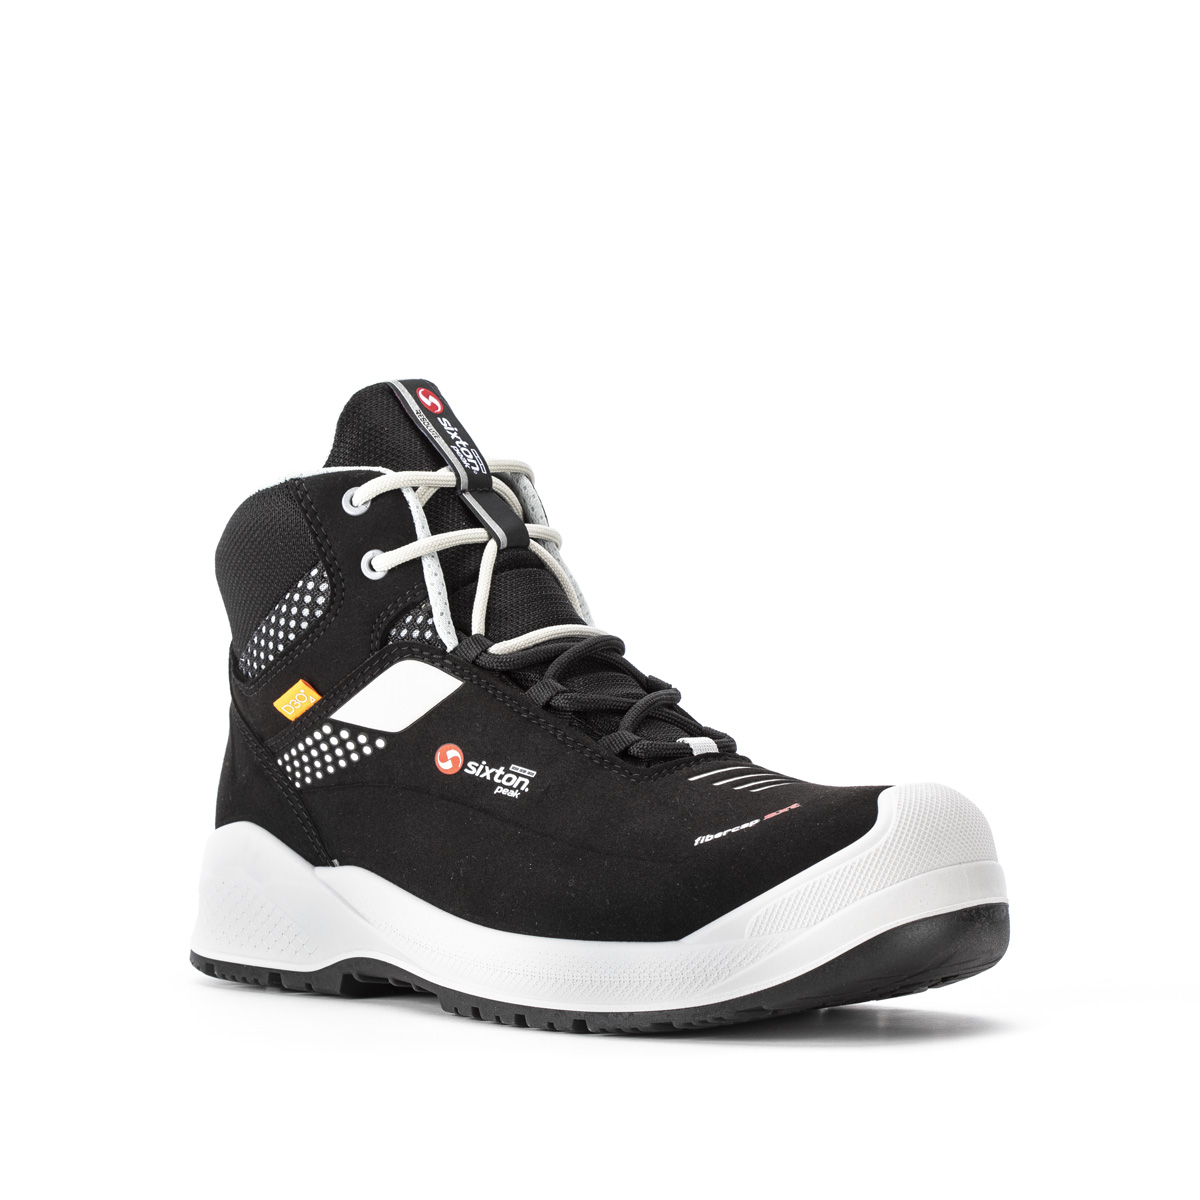 Resolute Forza High Dielectric Ankle Boot Con Classe Di Protezione Sb E Fo P Wru Src Ci Available Codice Modello 03l Sixton Peak Safety Shoes